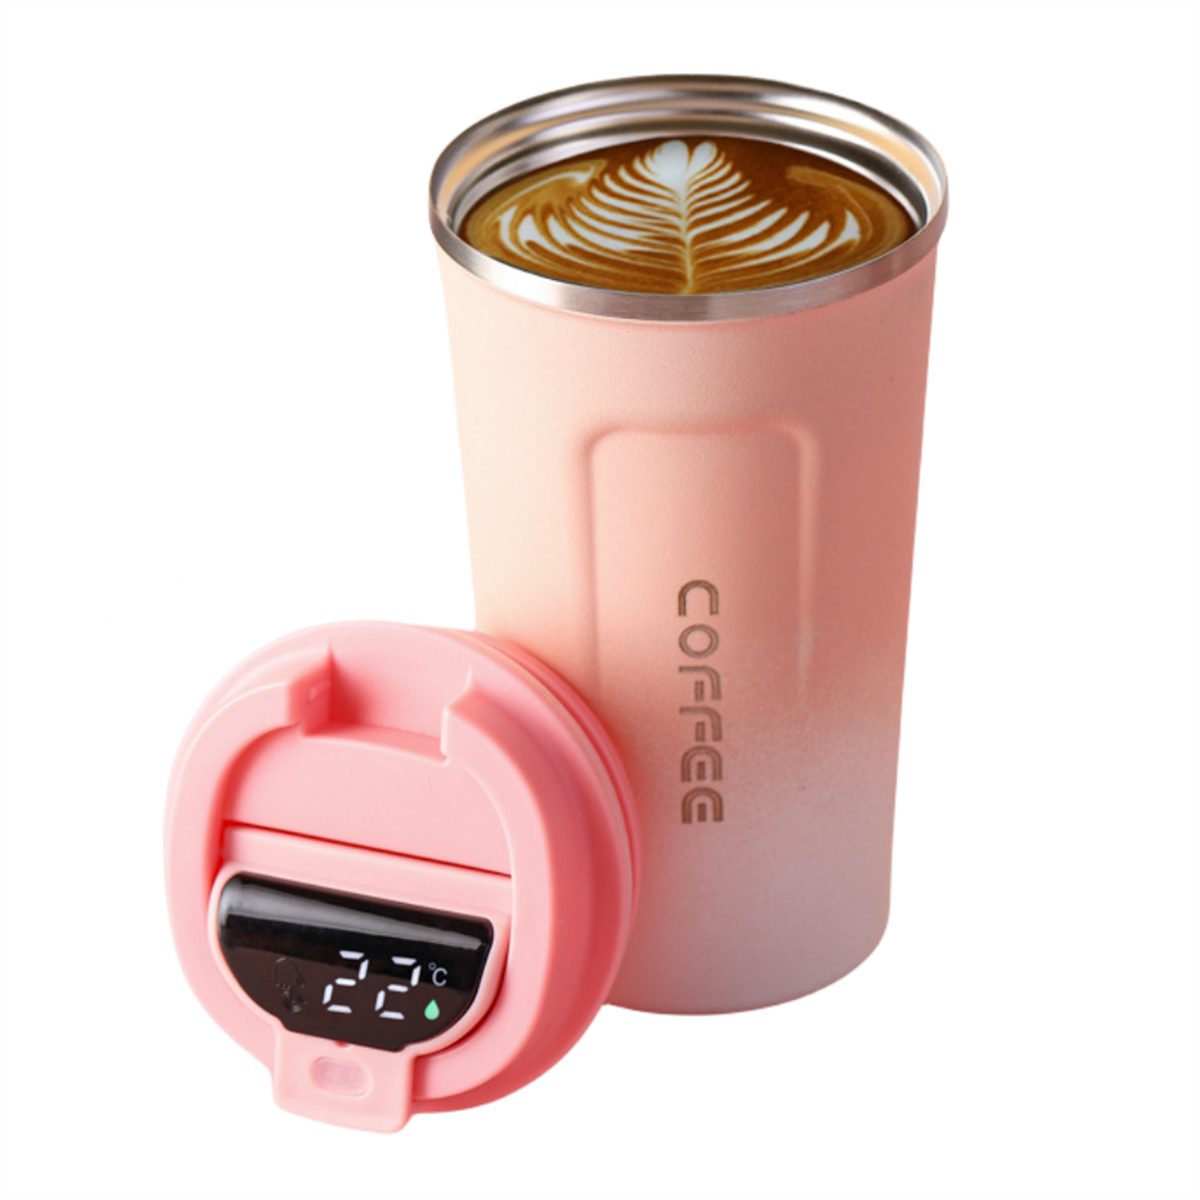 und Thermobecher Autokaffeetasse selected Isolierung Temperaturmessung carefully Intelligente der Rosa